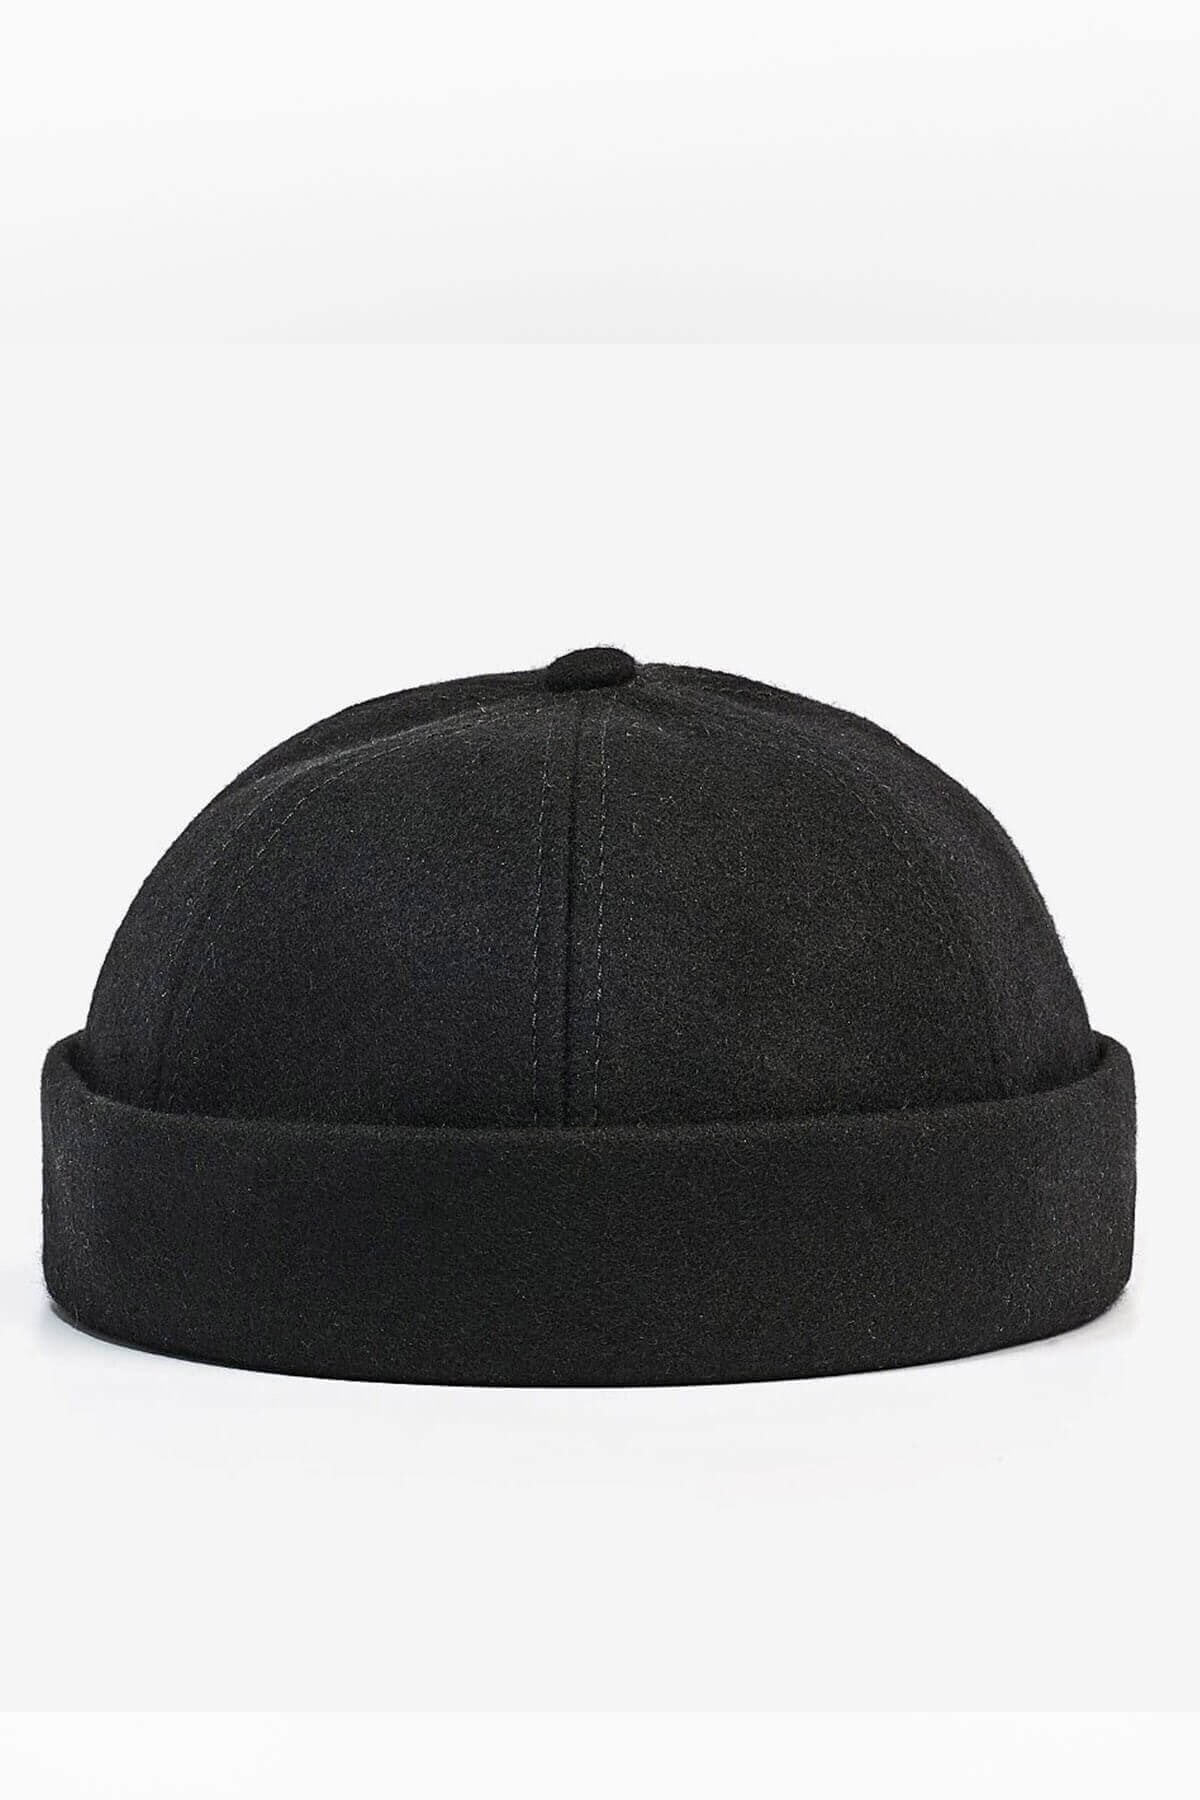 Külah Kadın Hipster Katlamalı Cap Docker Kışık Yün Şapka-siyah